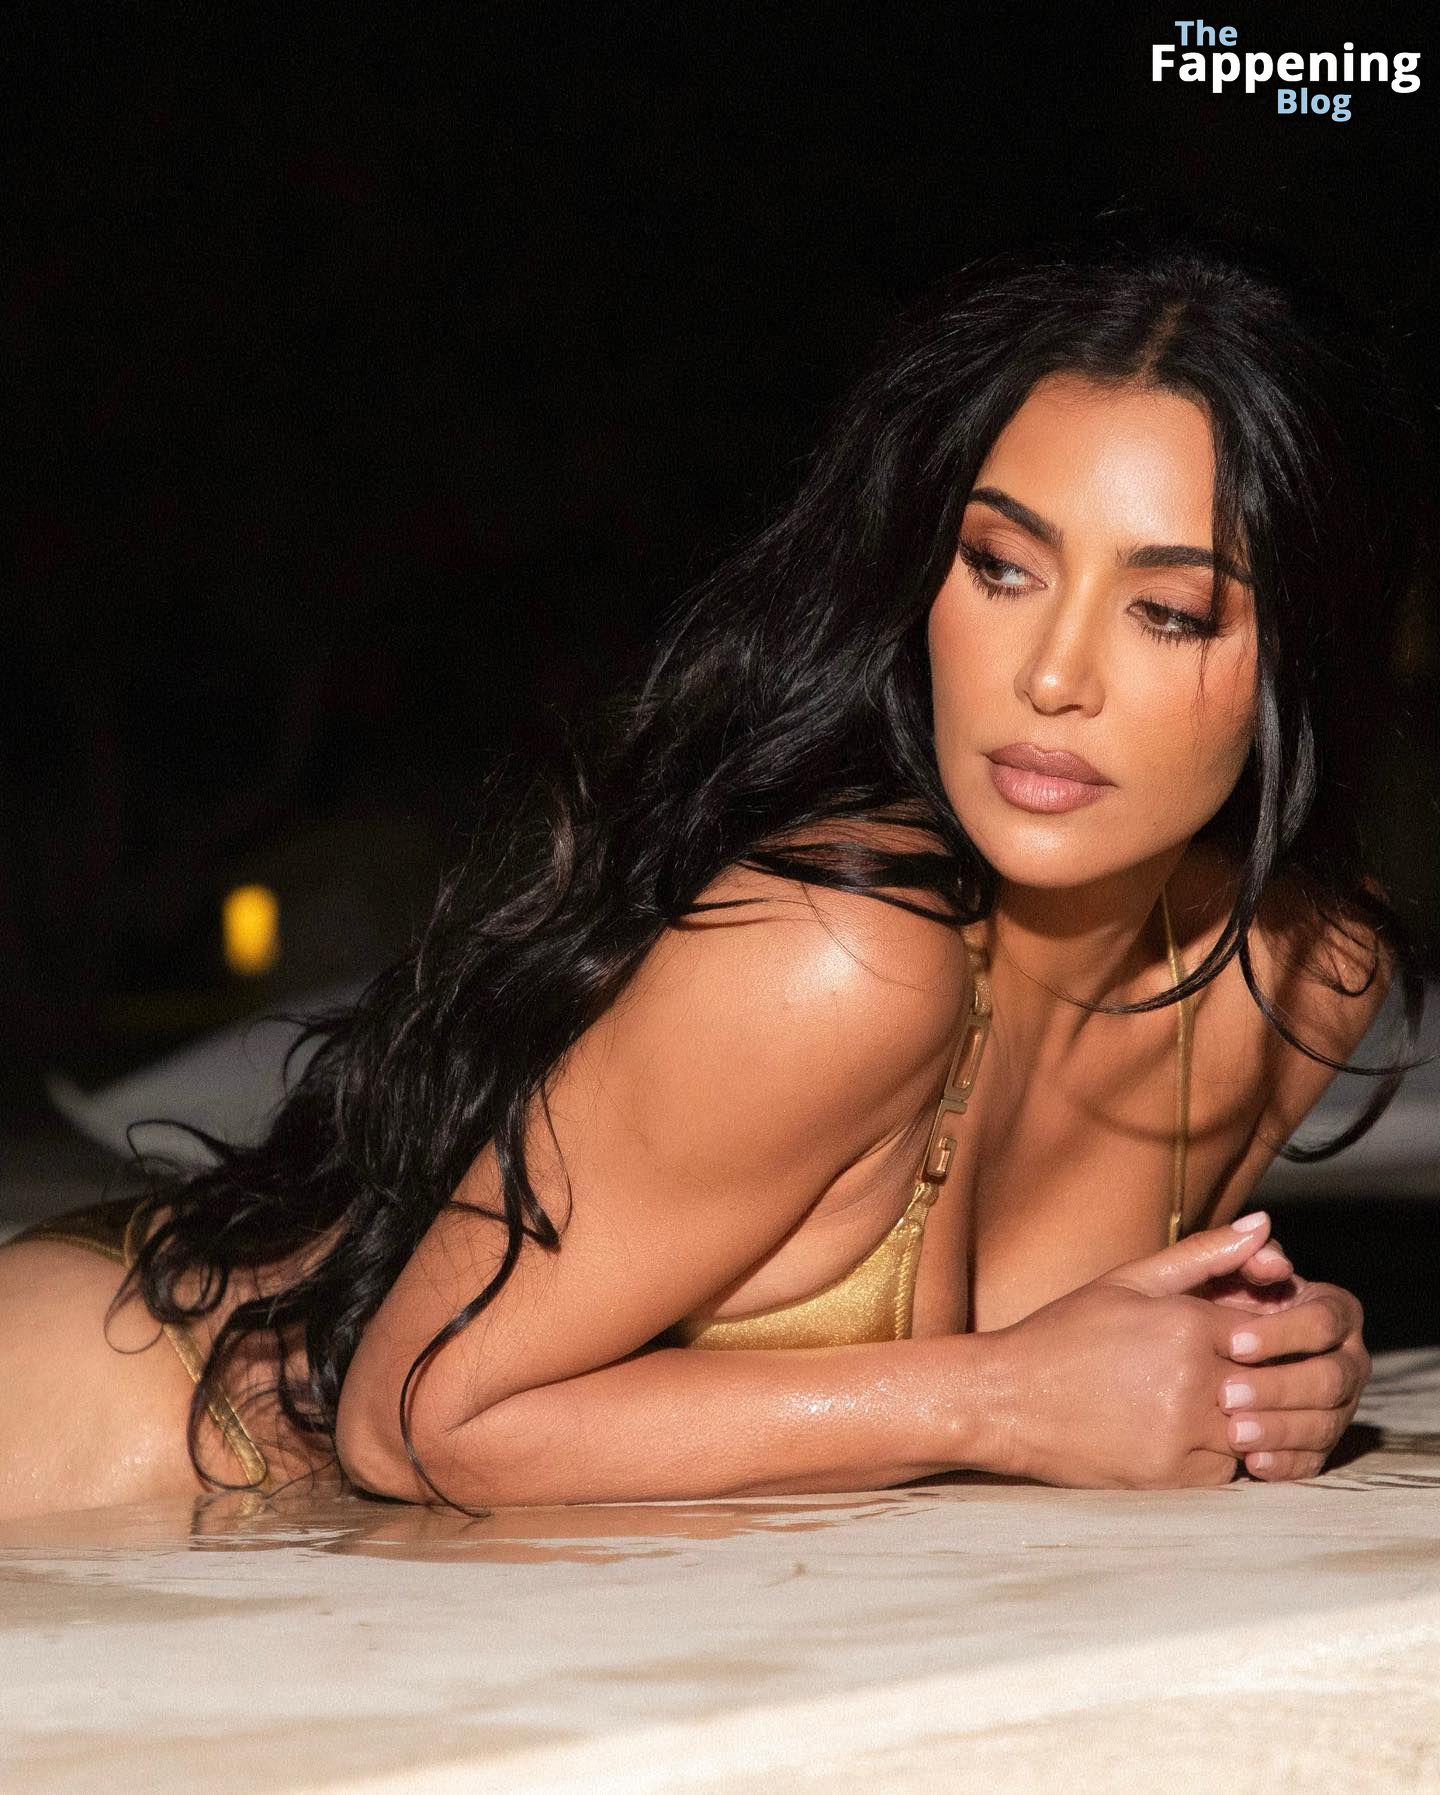 Kim-Kardashian-Sexy-The-Fappening-Blog-8-1.jpg